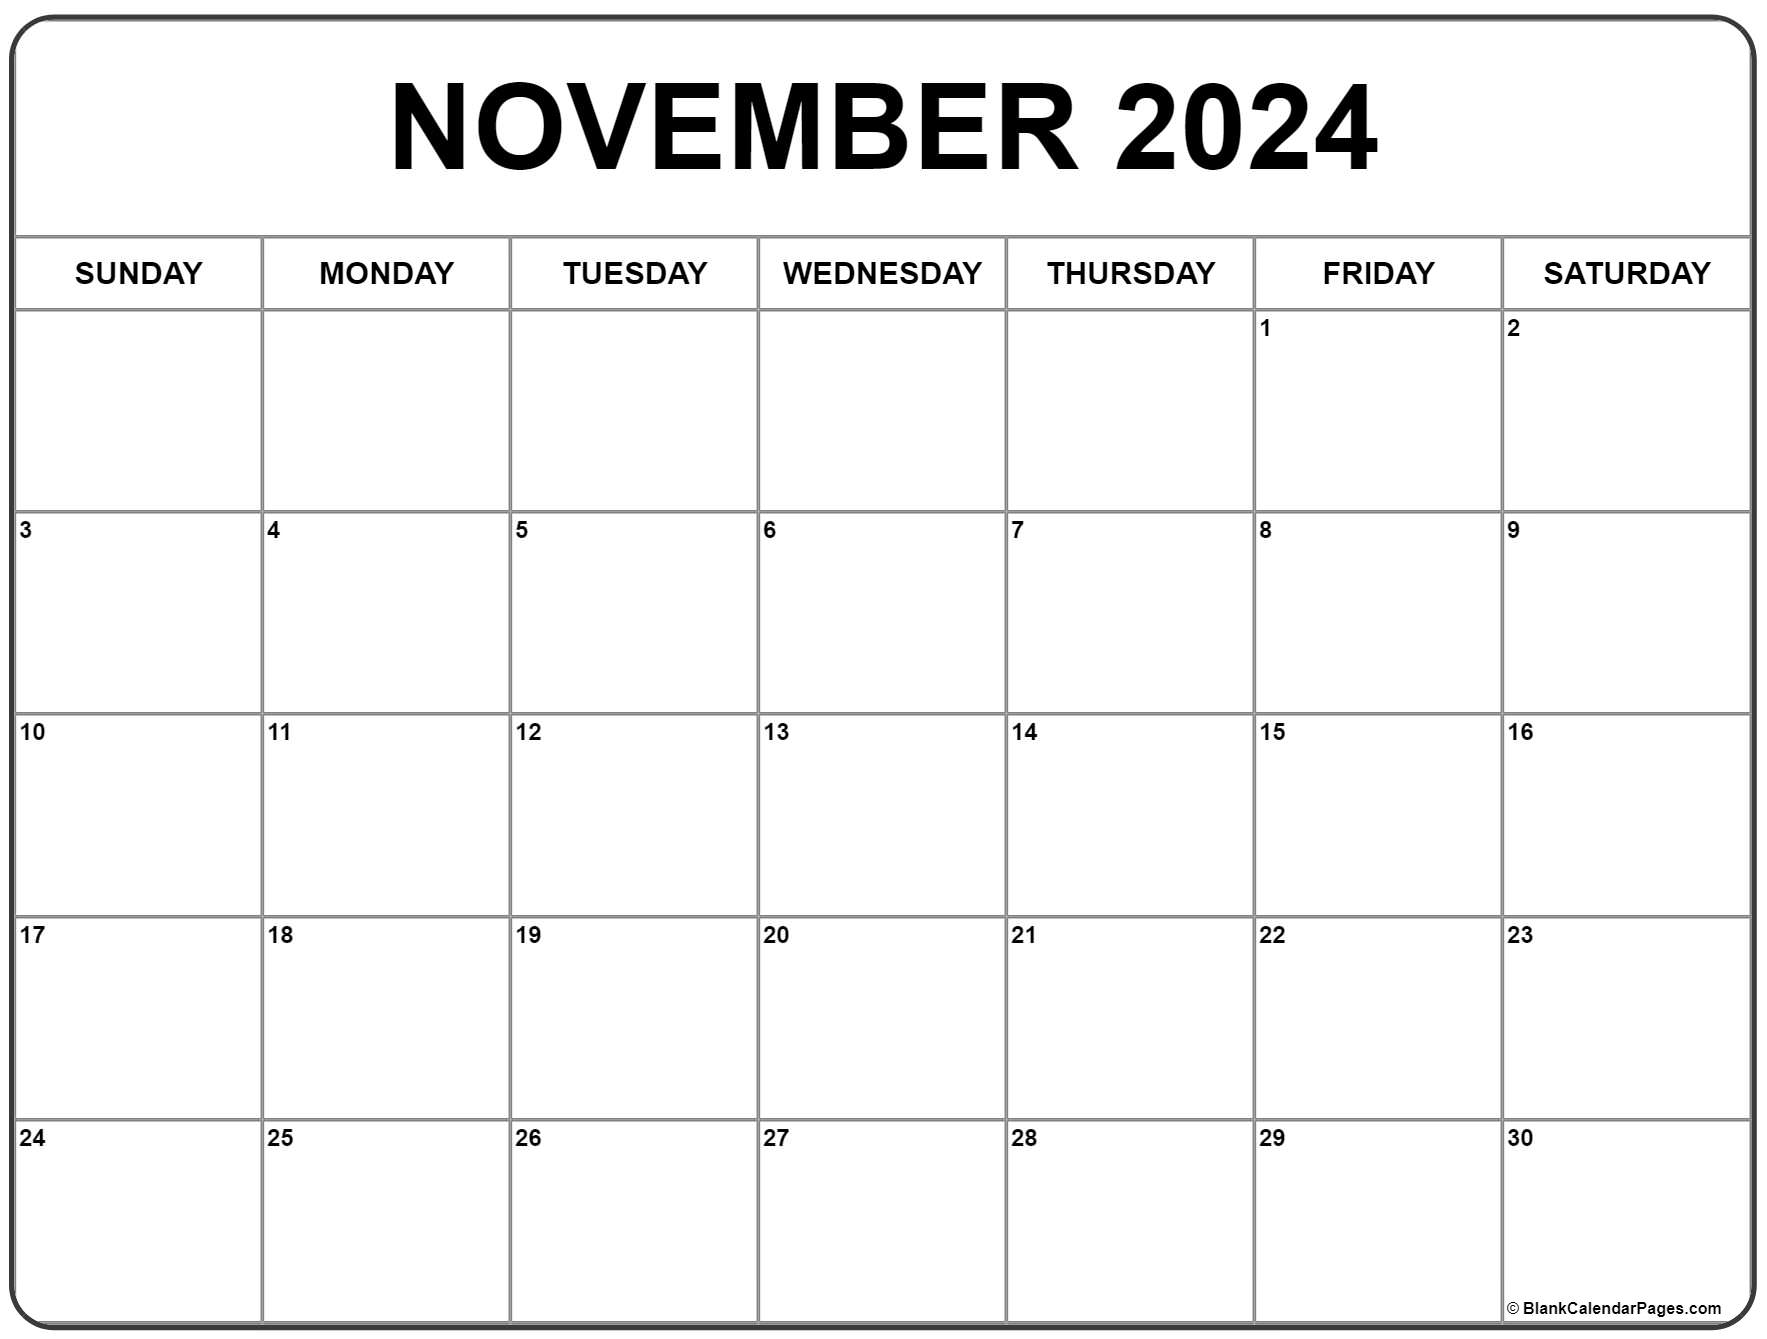 November Blank Calendar 2022 November 2022 Calendar | Free Printable Calendar Templates